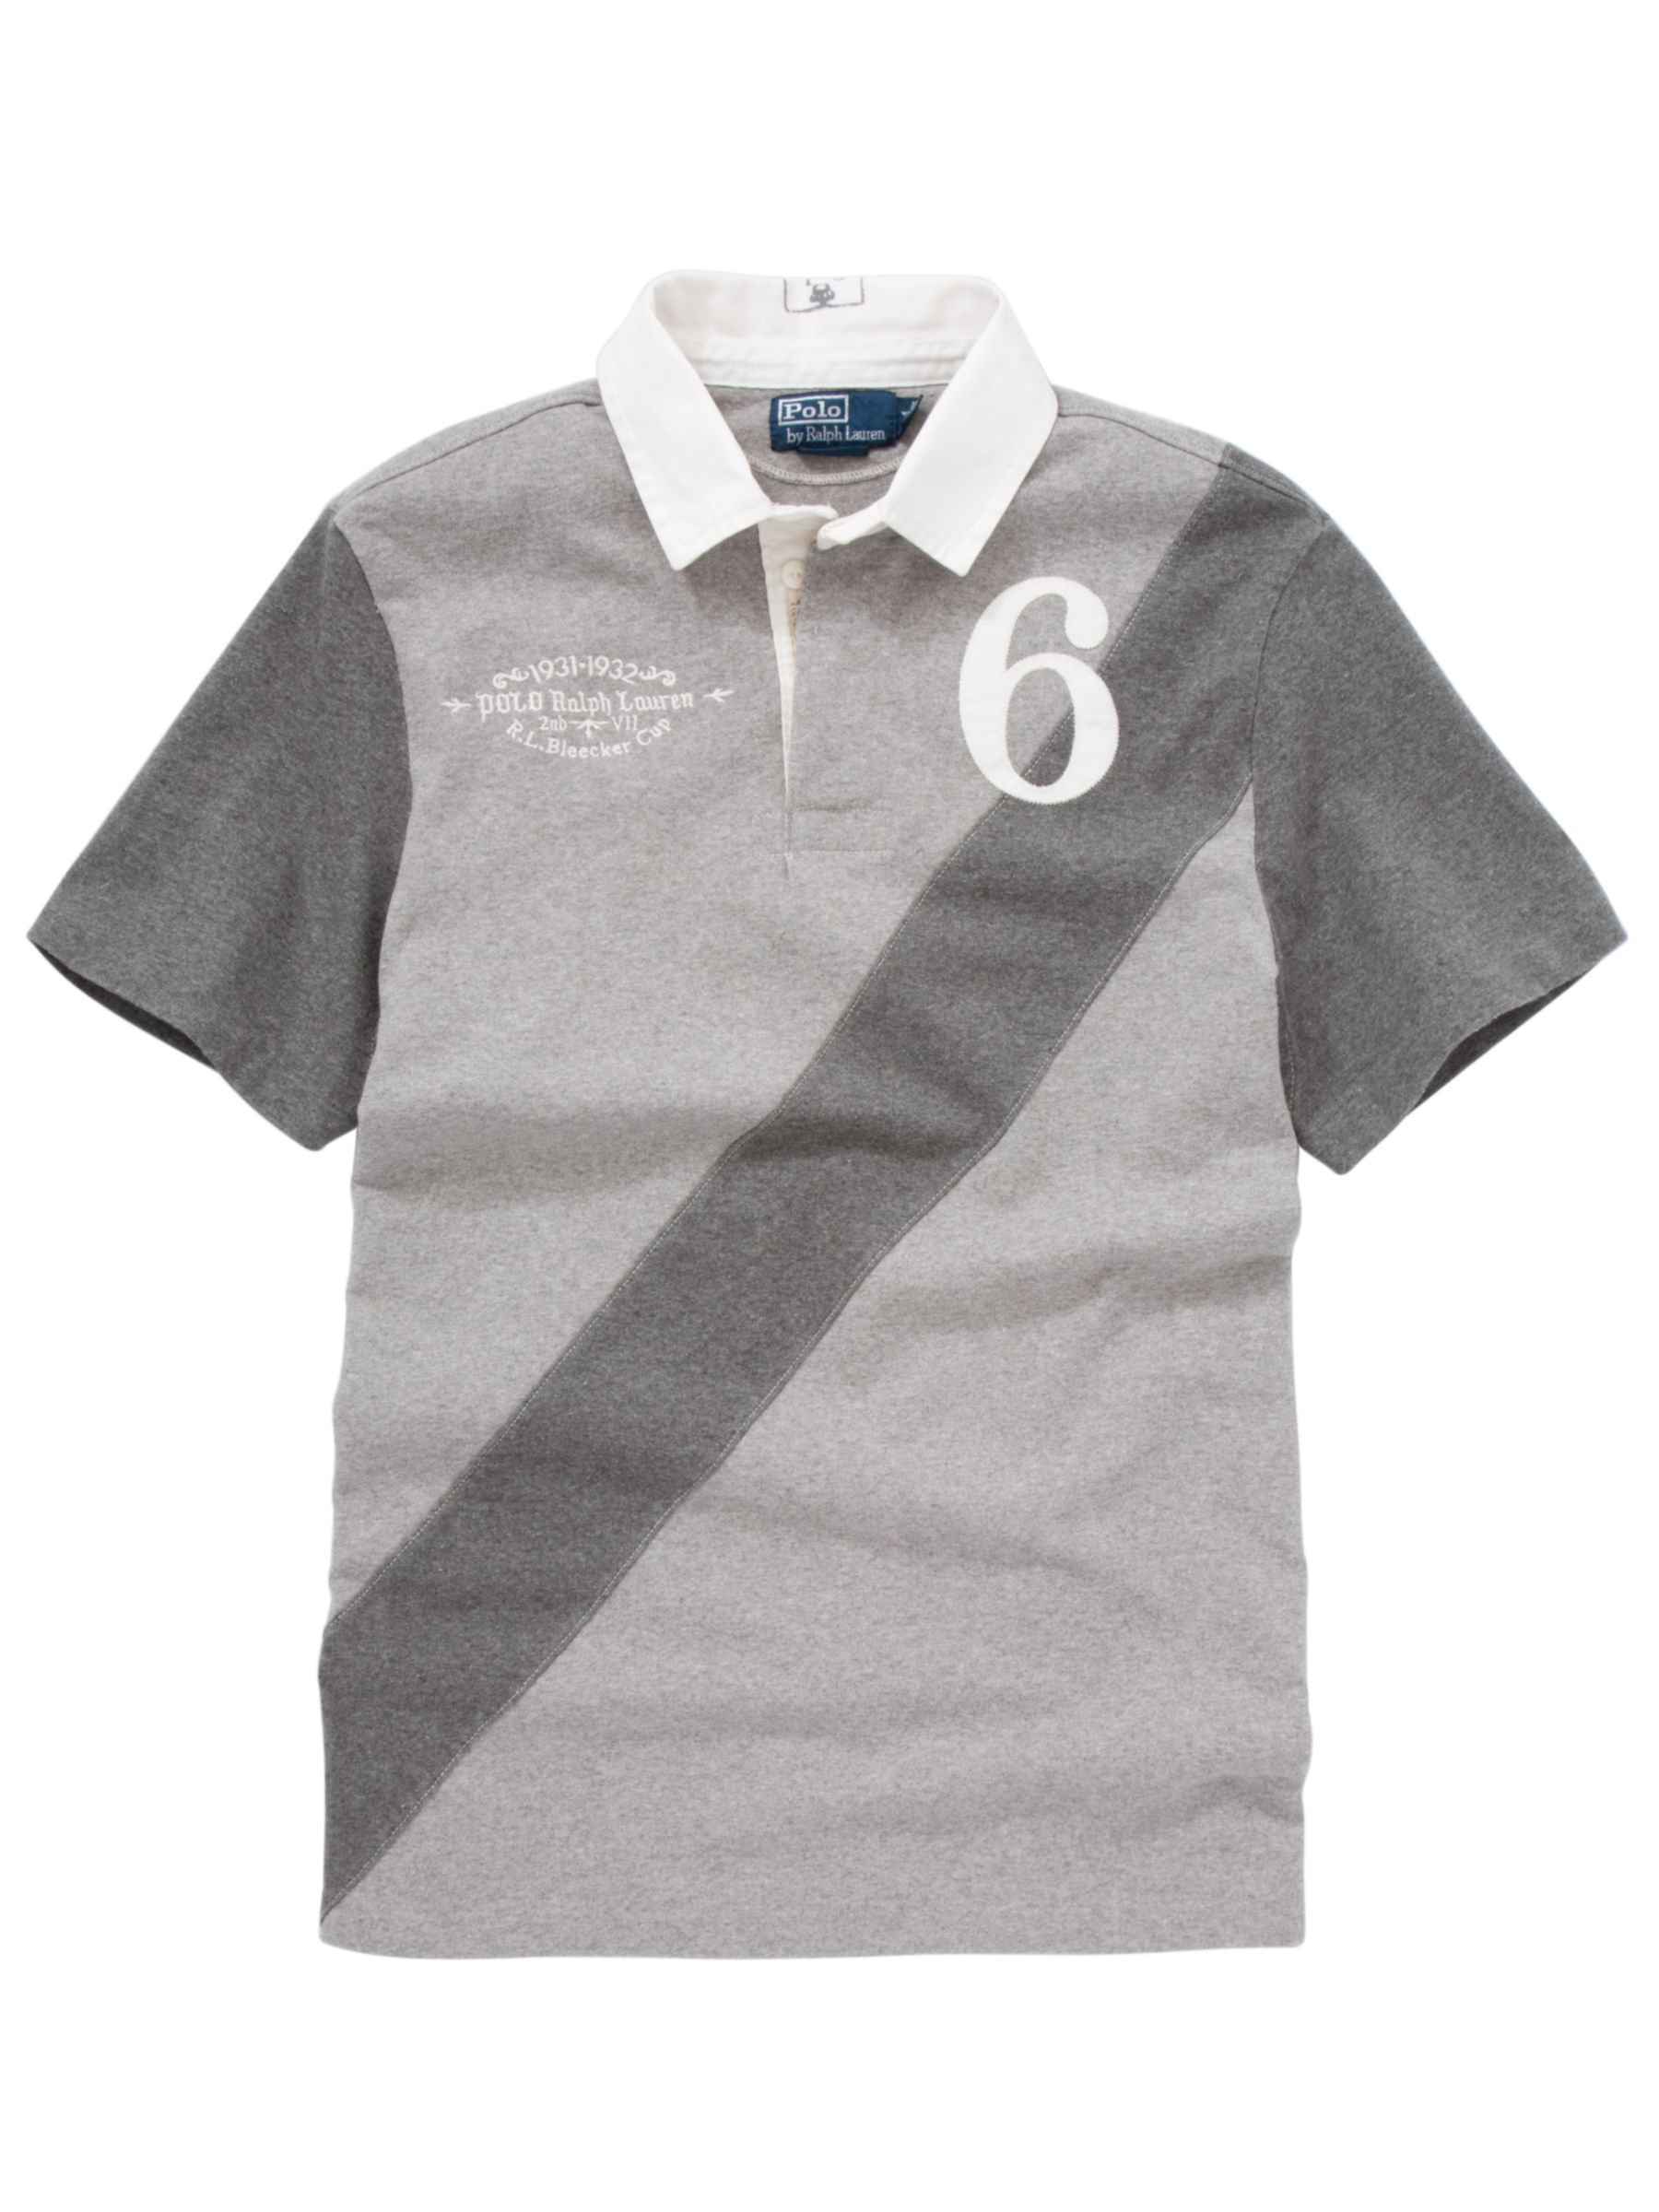 Polo Ralph Lauren Short Sleeve Rugby Shirt, Grey